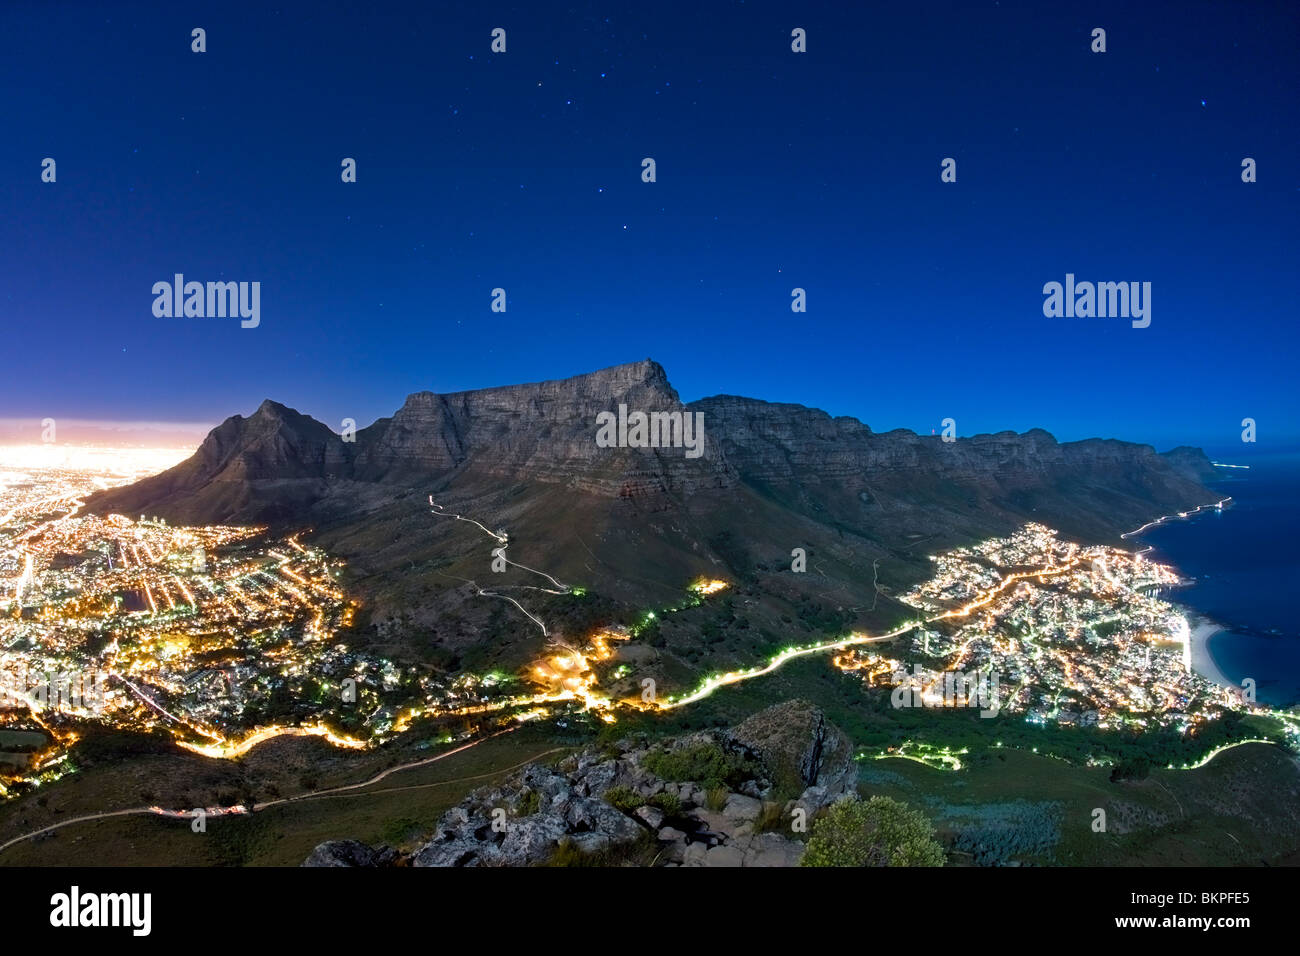 La Montagna della Tavola sotto la luce della luna piena con le stelle nel cielo, Cape Town, Sud Africa. Foto Stock